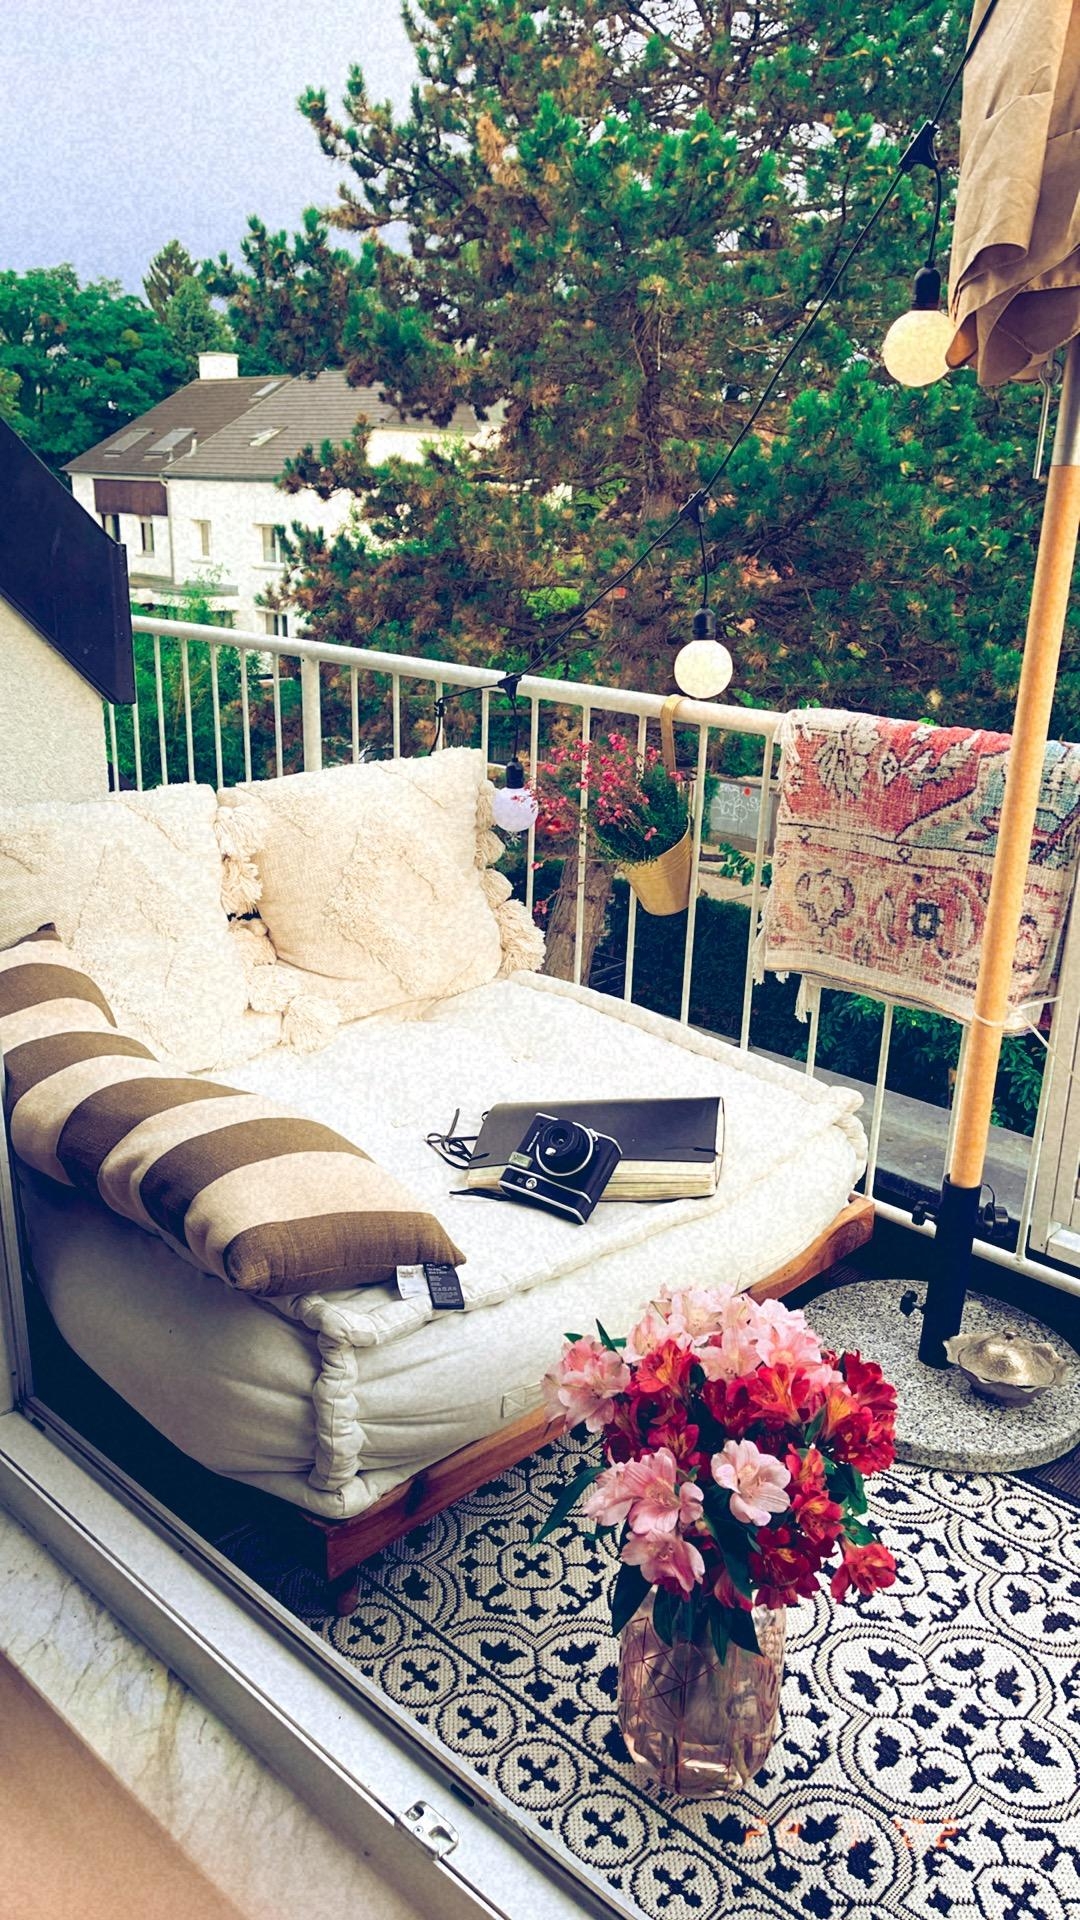 Die Ruhe am Abend auf Deinem Balkon. Tagebuch schreiben, dem Wind zuhören und dankbar sein. #dankbar#liebe#balkon#summer